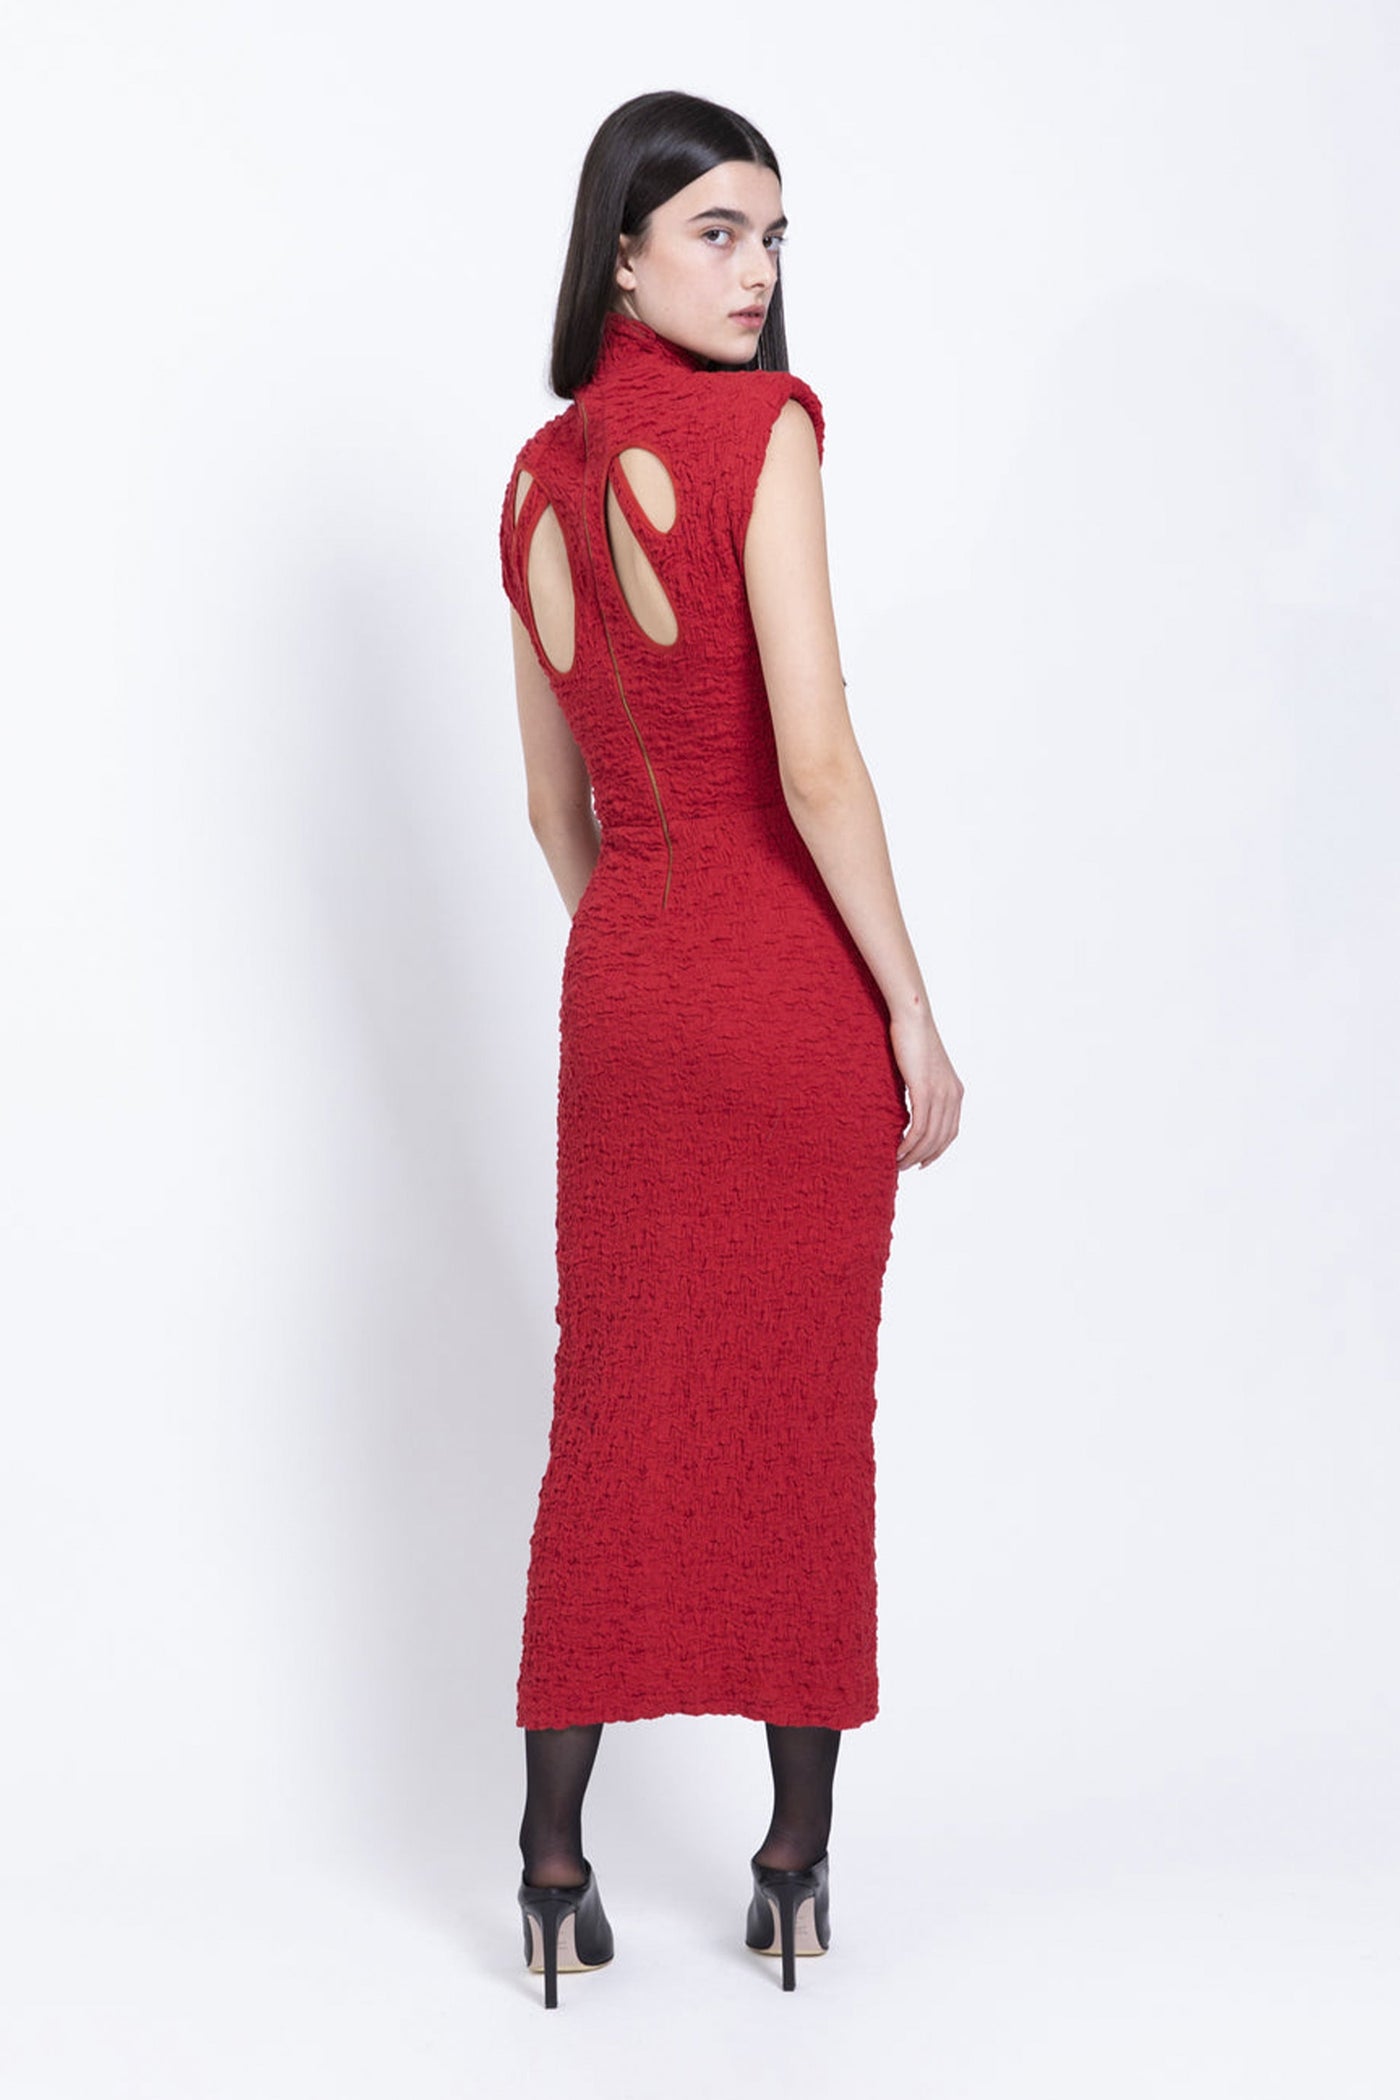 Sabina Musayev Nofit Dress - Red